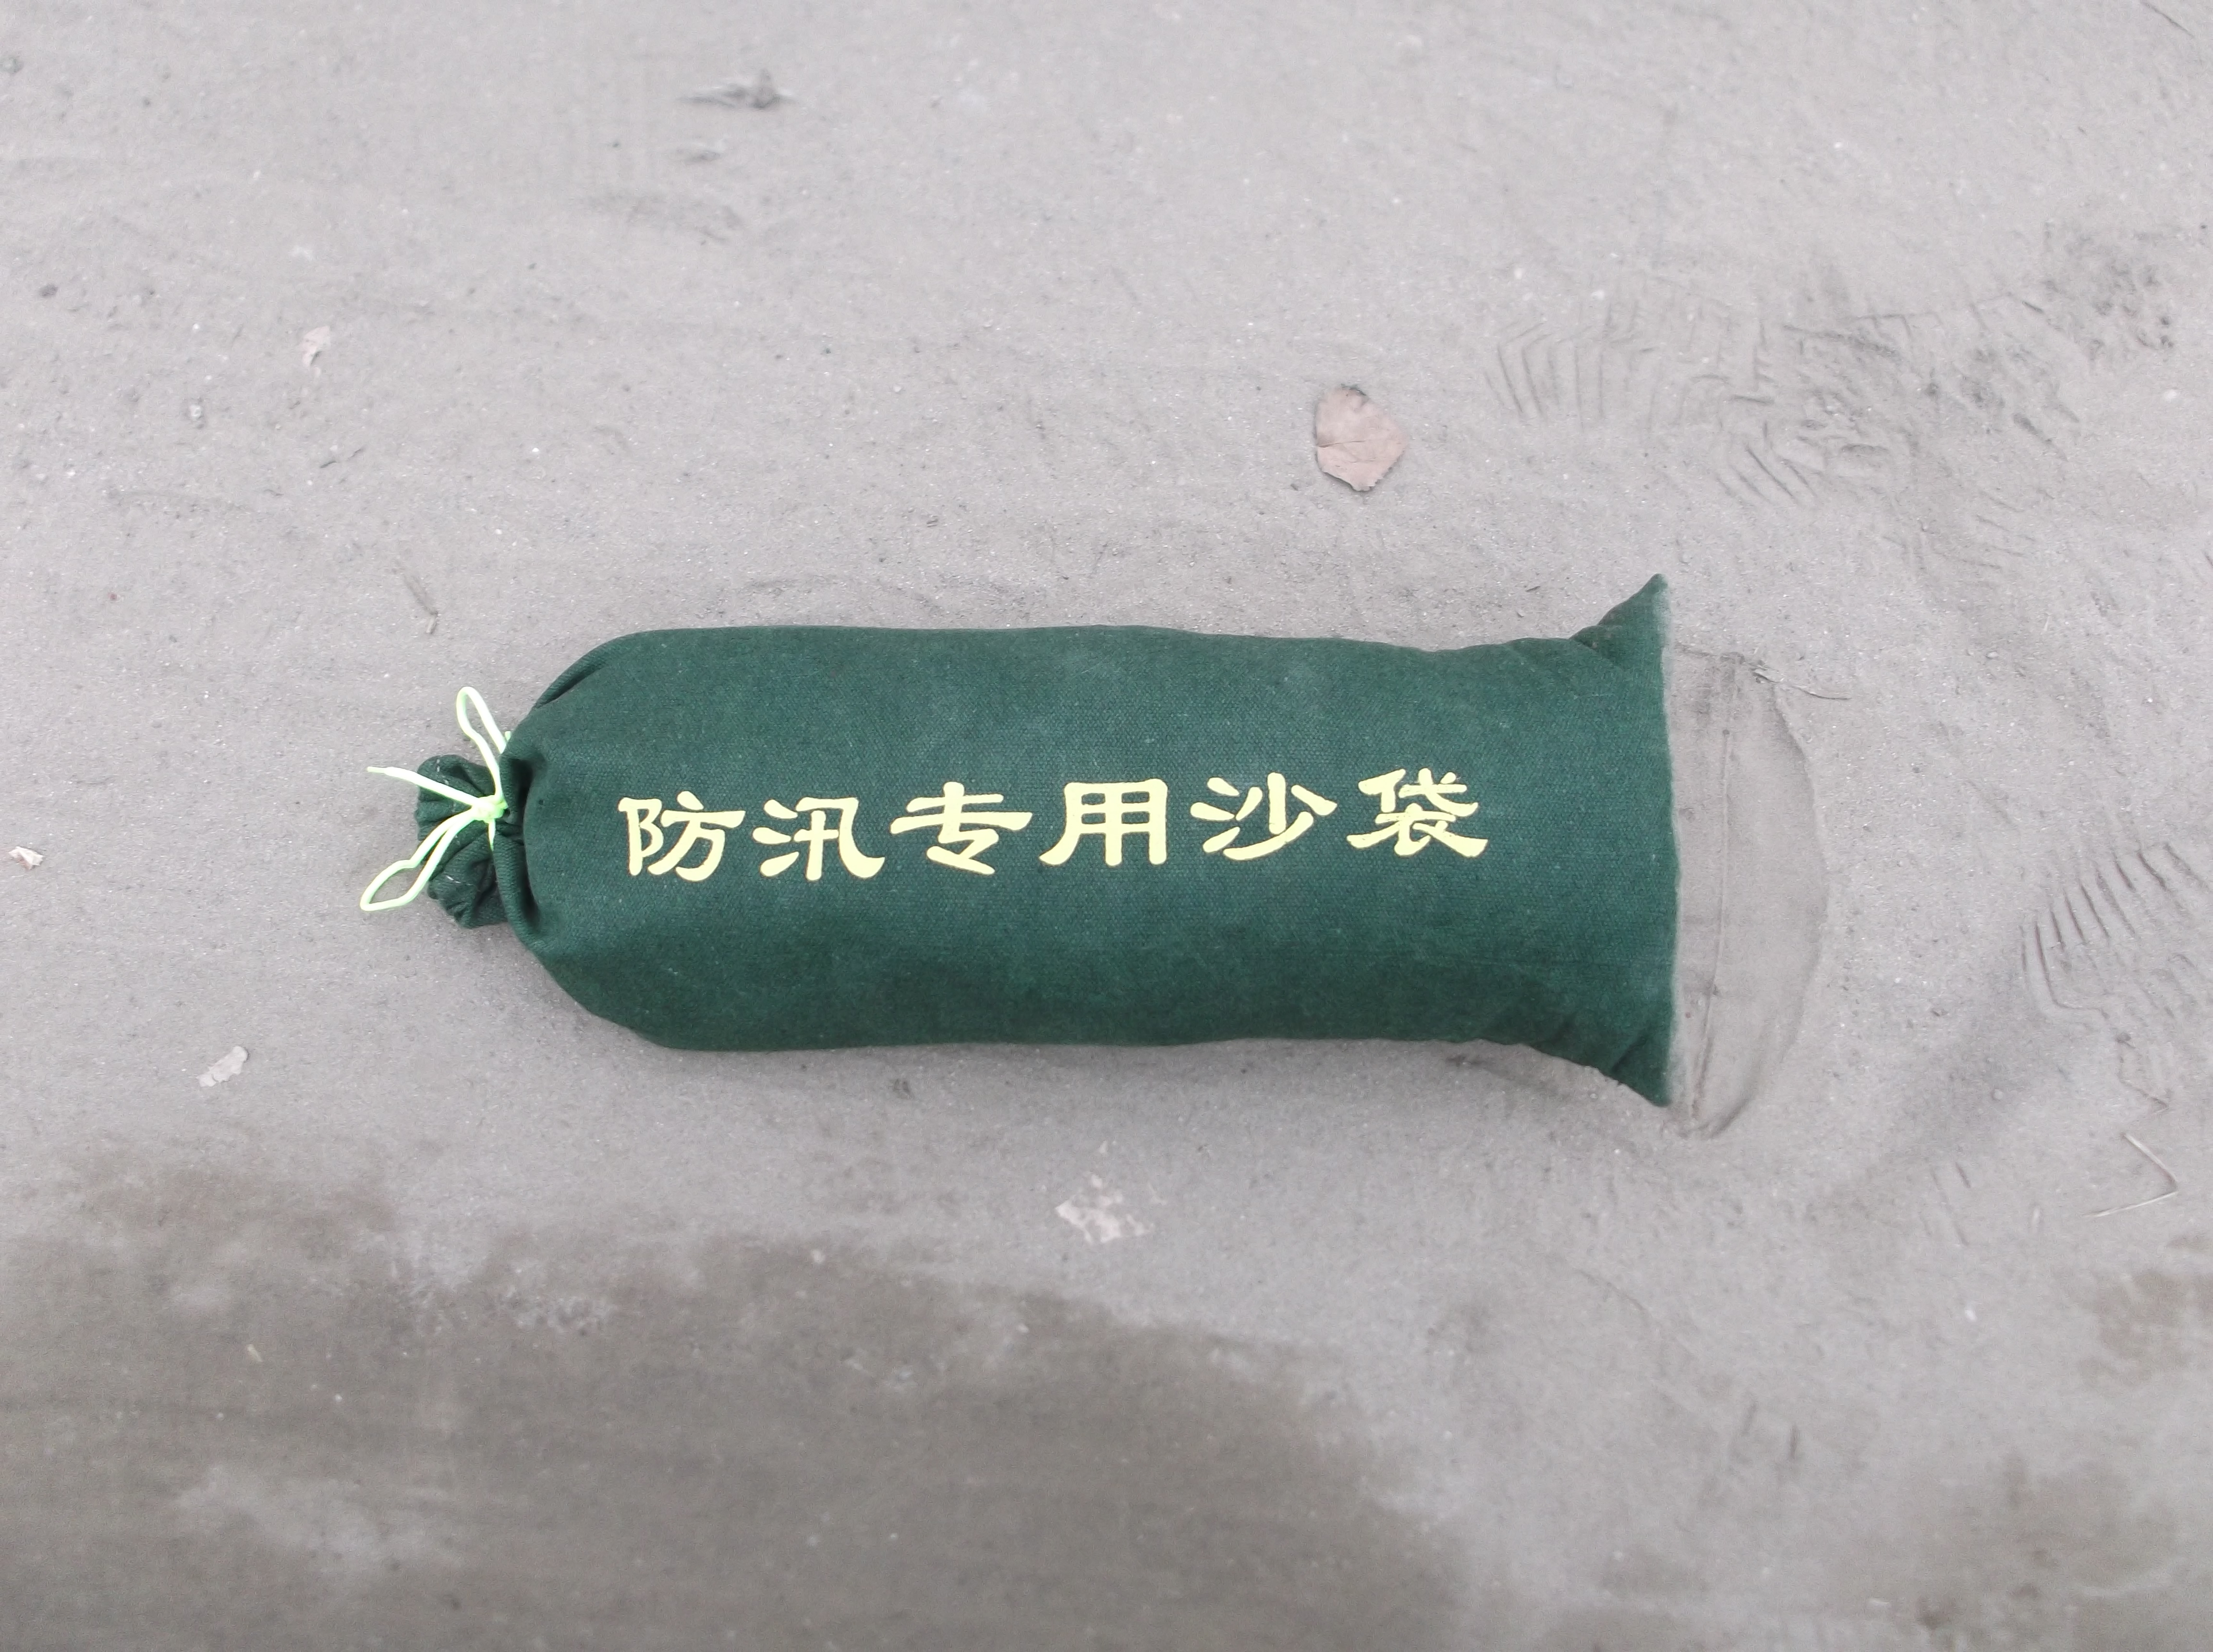 北京防汛沙袋防汛吸水膨胀袋 防汛沙袋防汛吸水膨胀袋价格 防汛沙袋防汛吸水膨胀袋批发